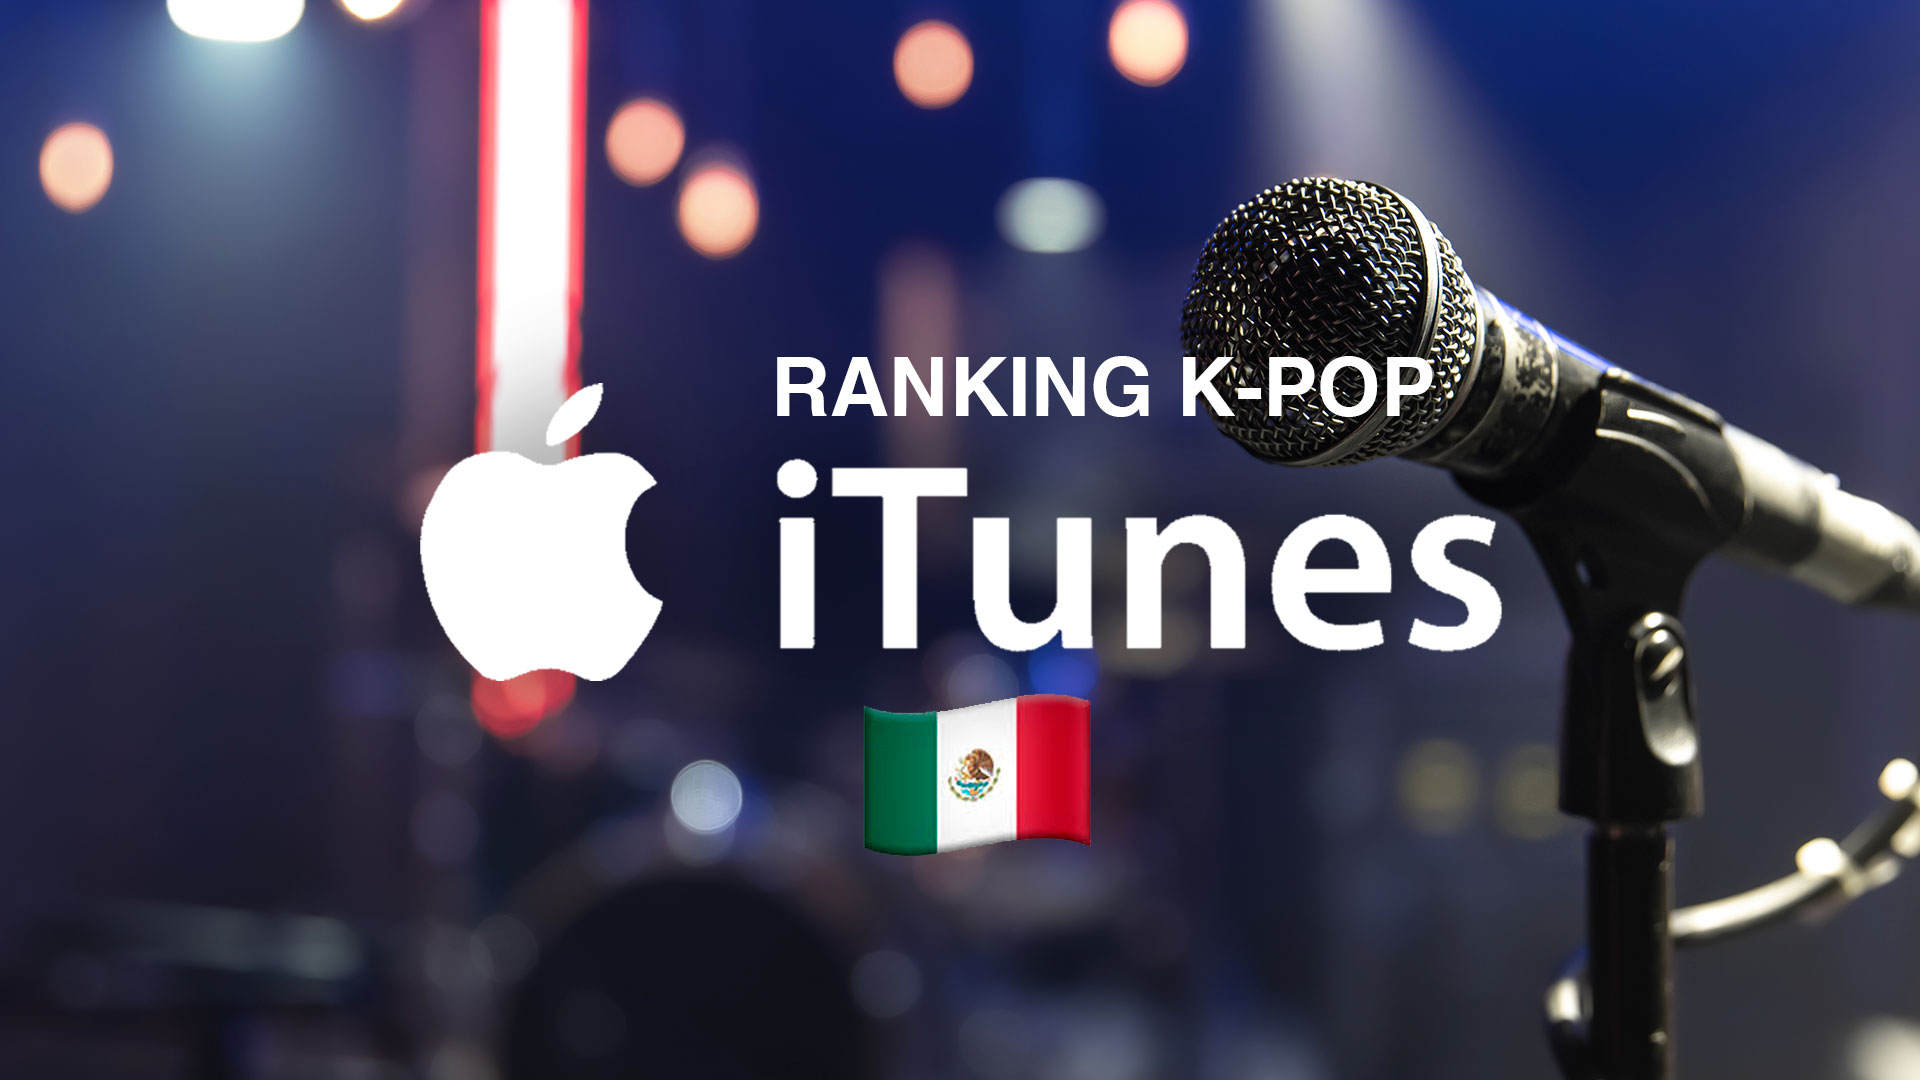 Yet To Come de BTS encabeza la lista de las canciones de K-pop más  reproducidas en iTunes México - Infobae